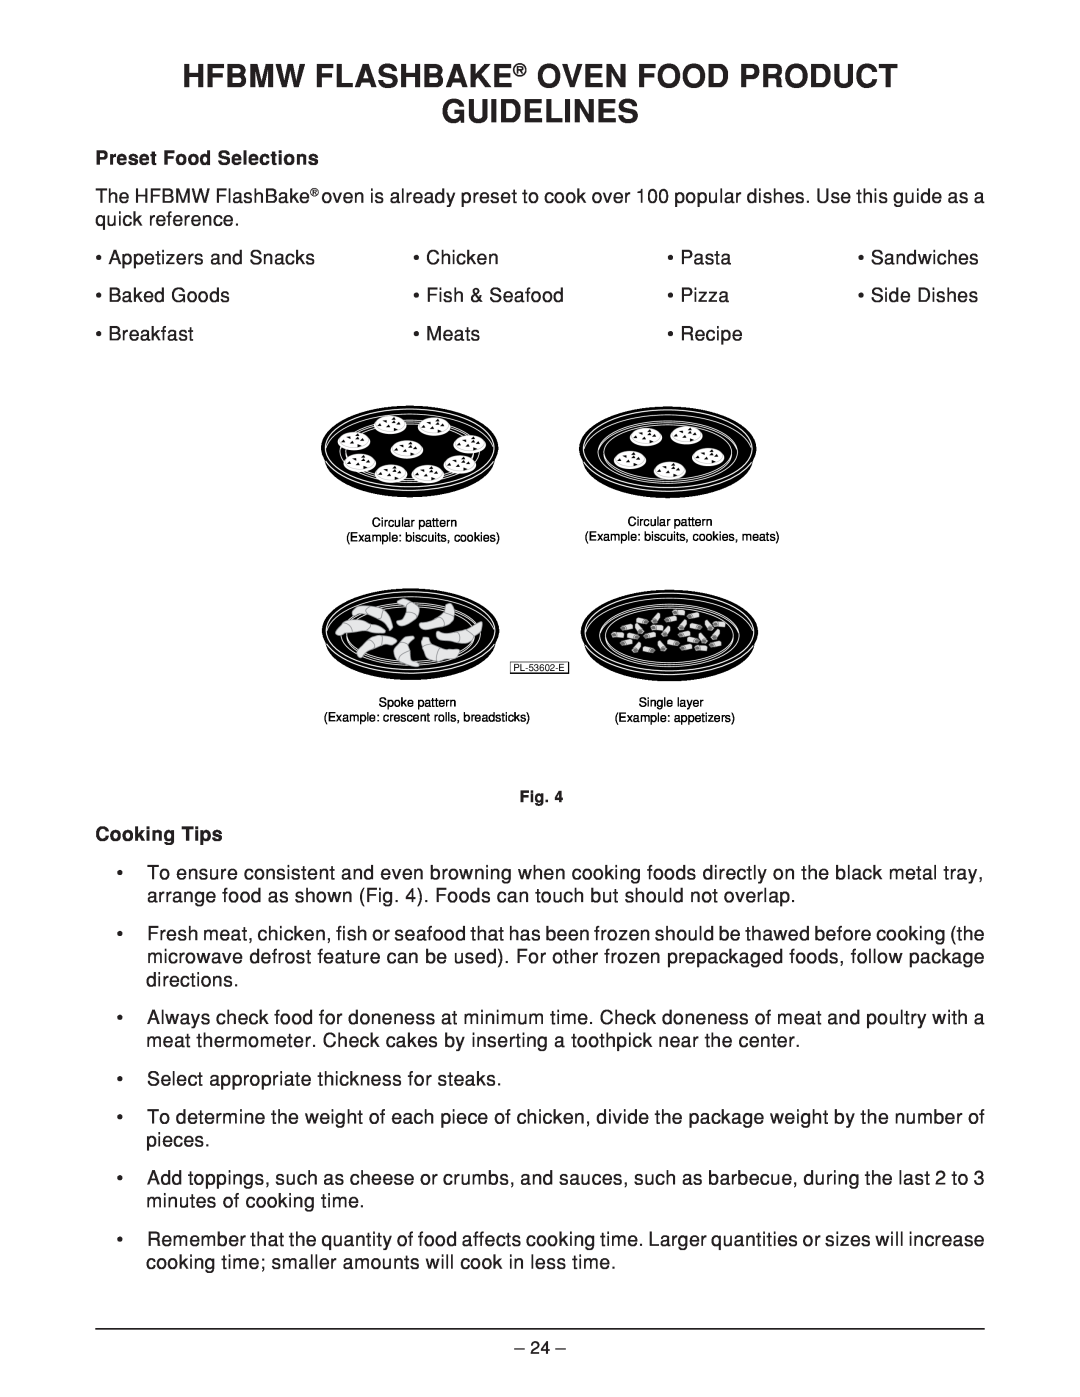 Hobart HFBMW3, HFBMW2 ML-126818 manual Hfbmw Flashbake Oven Food Product Guidelines, Cooking Tips, Preset Food Selections 